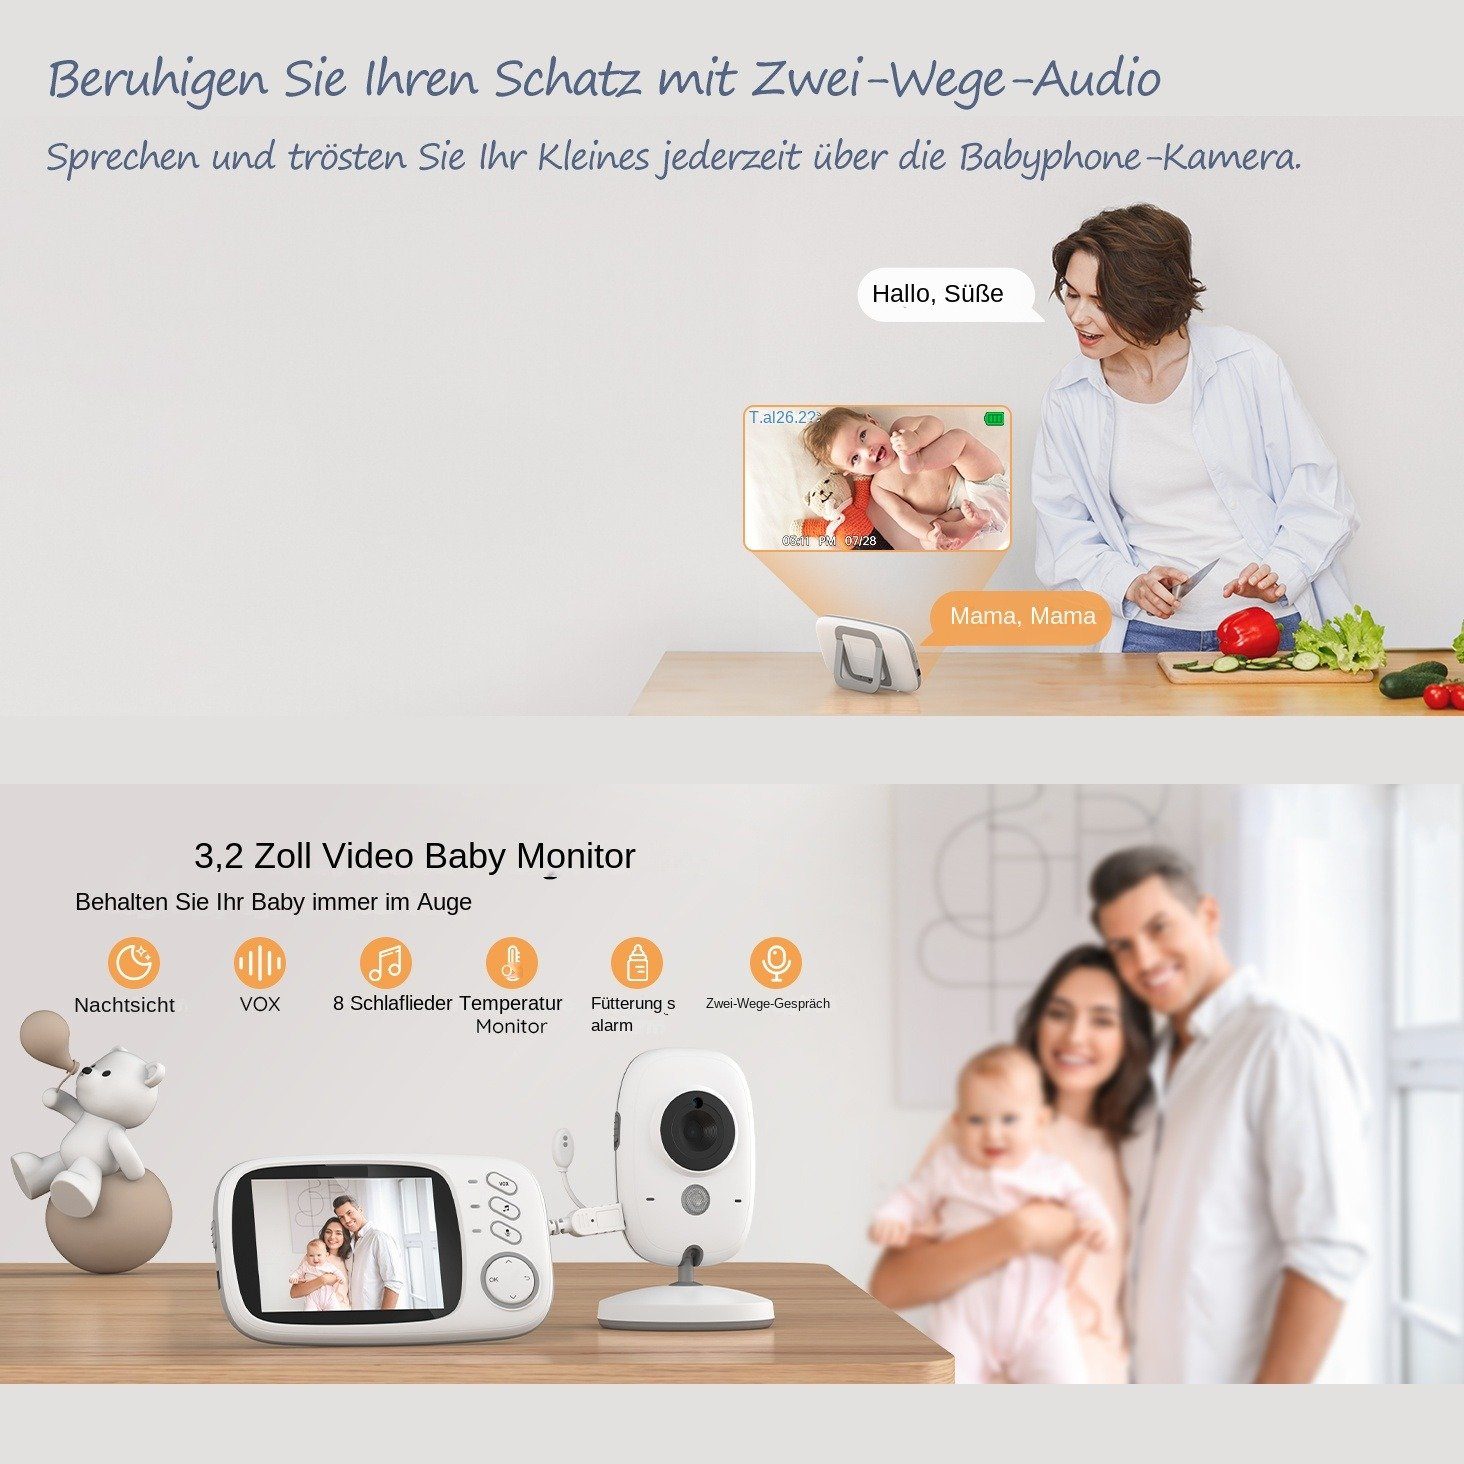 BUMHUM Video-Babyphone Video-Babyphone Babyphone 3.2-Zoll-LCD-Bildschirm, Schlaflieder, Gegensprechfunktion Zwei-Wege-Audio, Temperaturanzeige, Großer Kamera, Extra Infrarot-Nachtsicht, mit